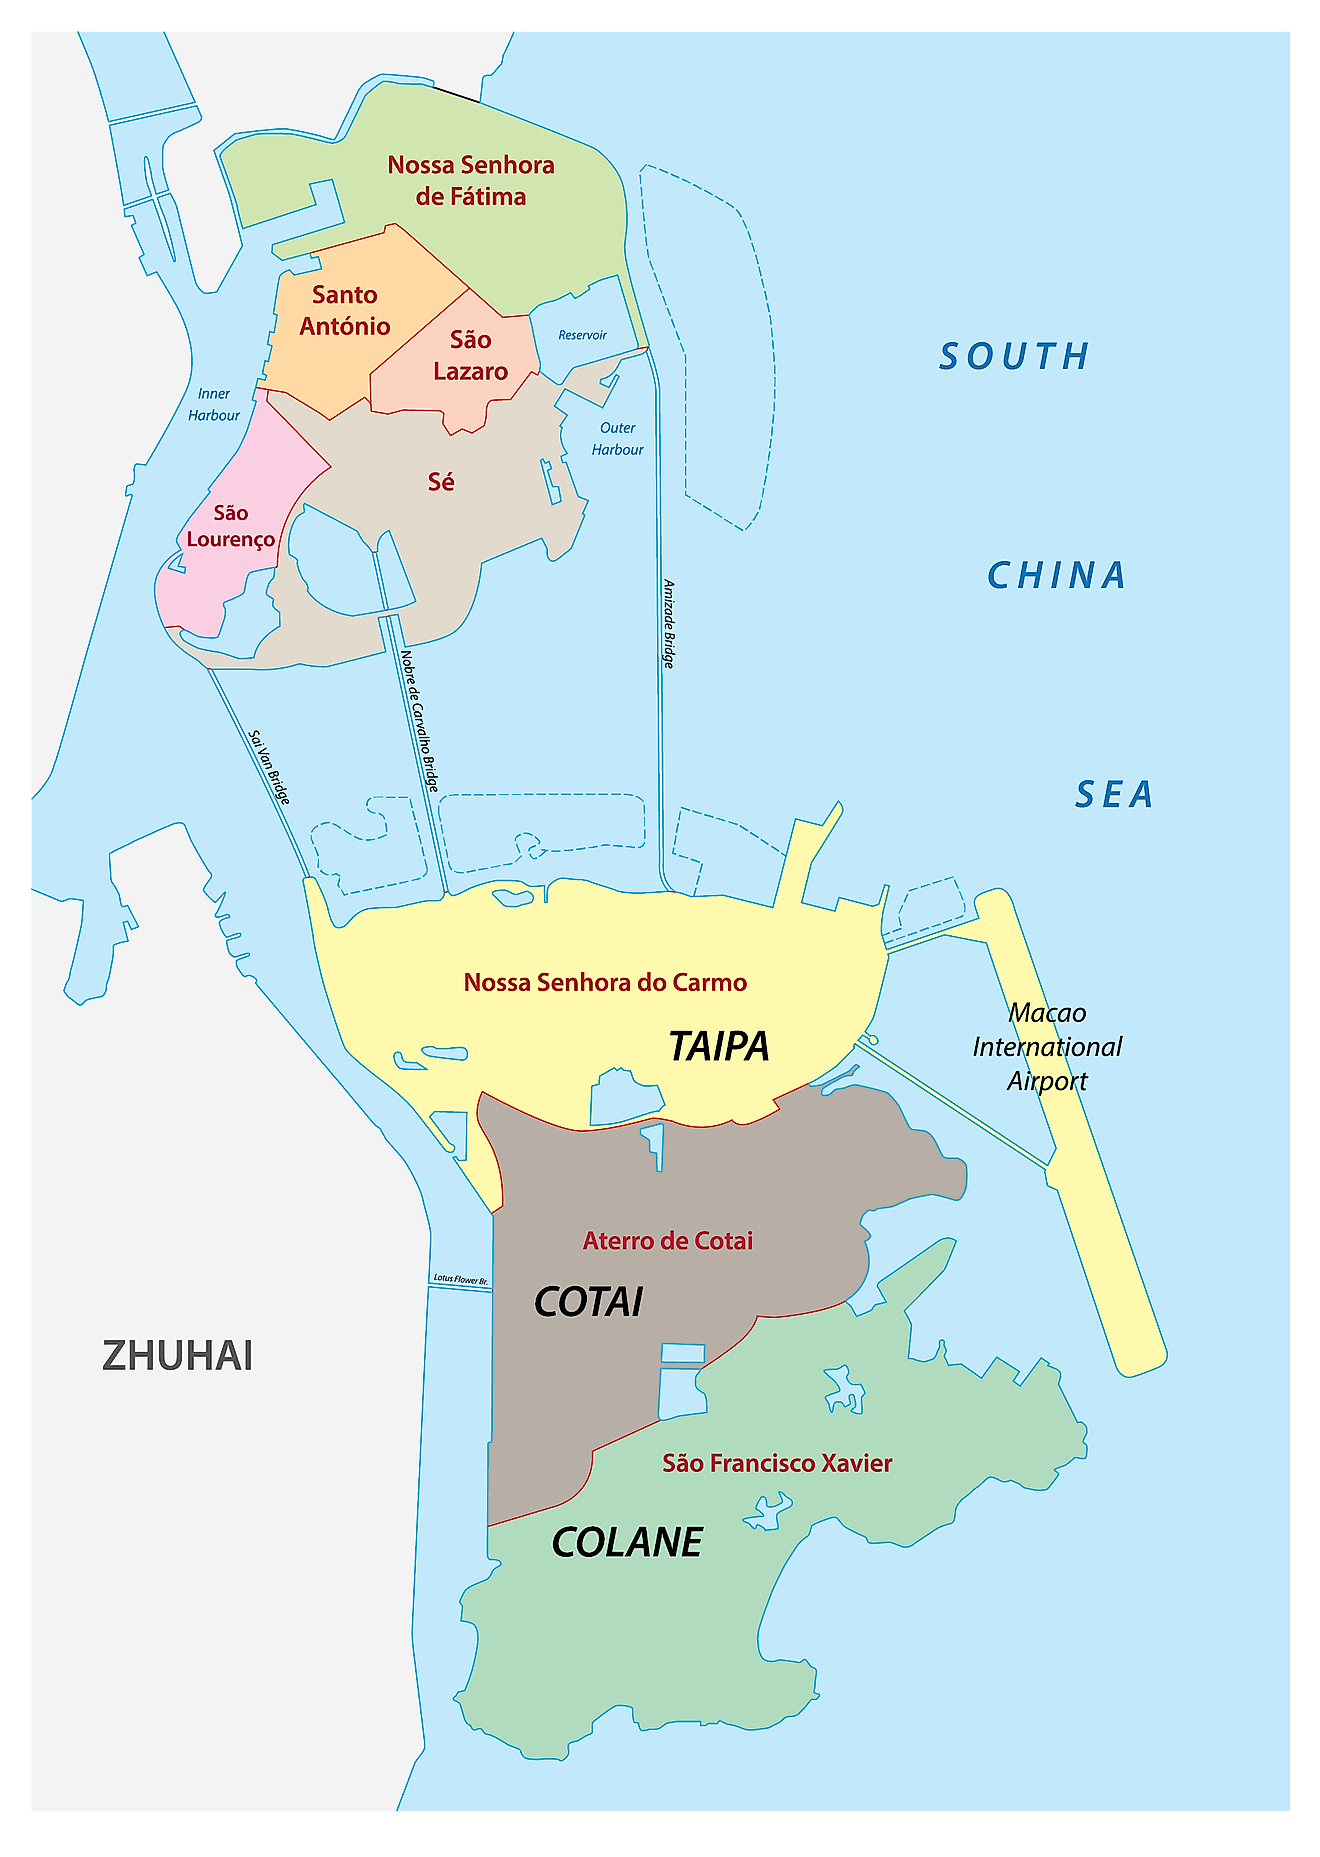 Mapa político de Macao que muestra sus 7 parroquias y territorio especial de Cotai